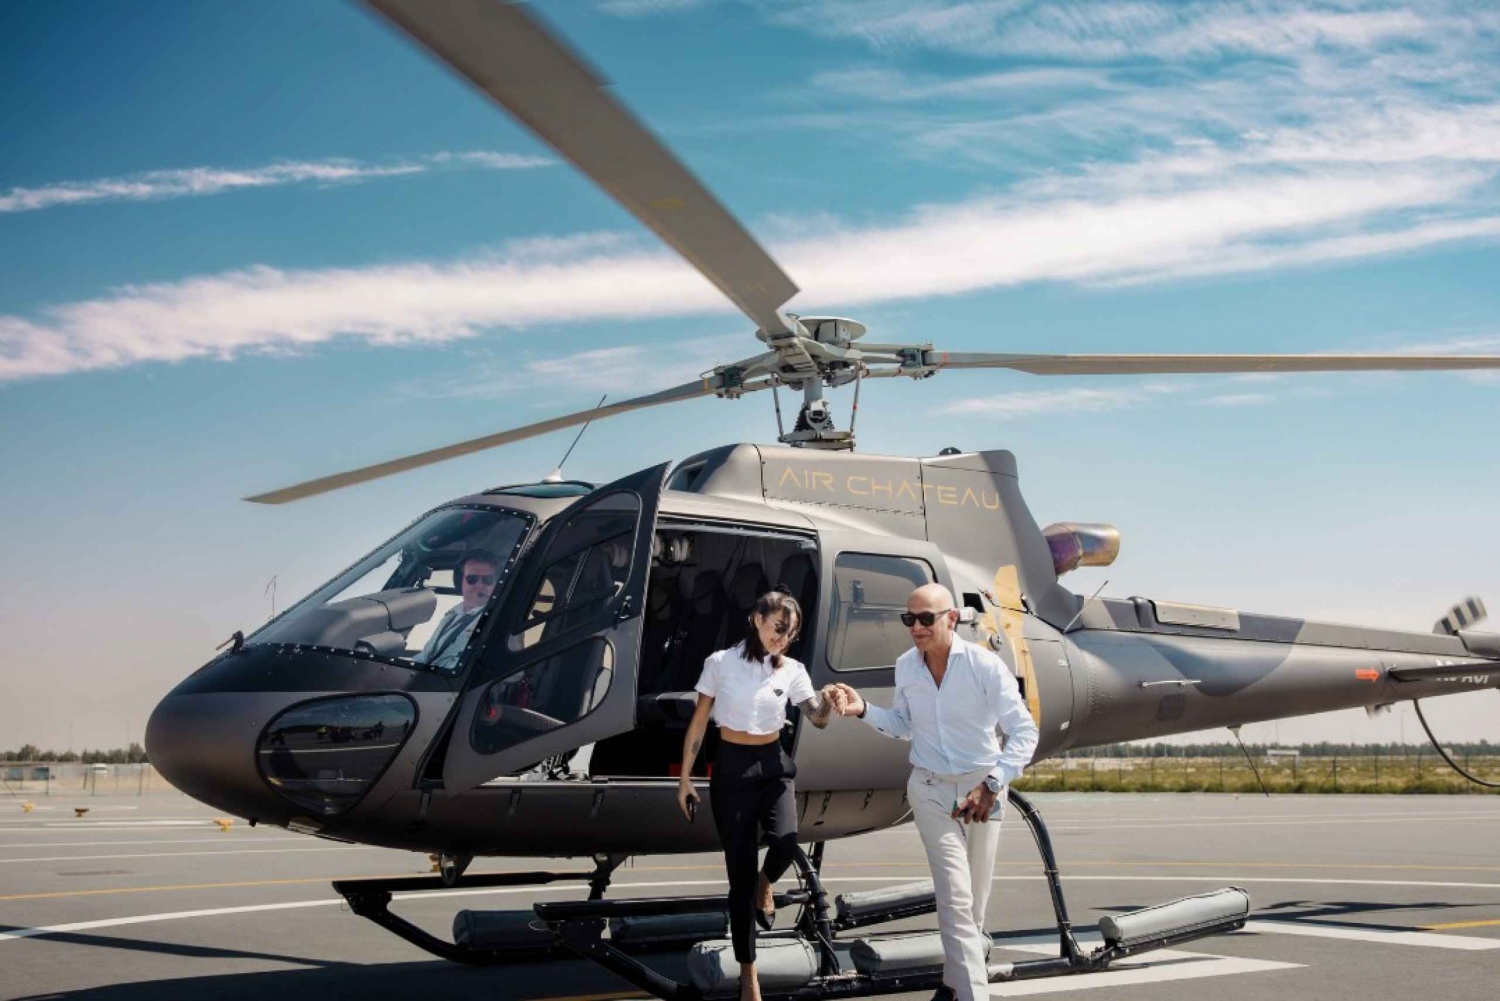 Dubai: Hubschrauberrundflug mit kostenlosen Videos & Fotos